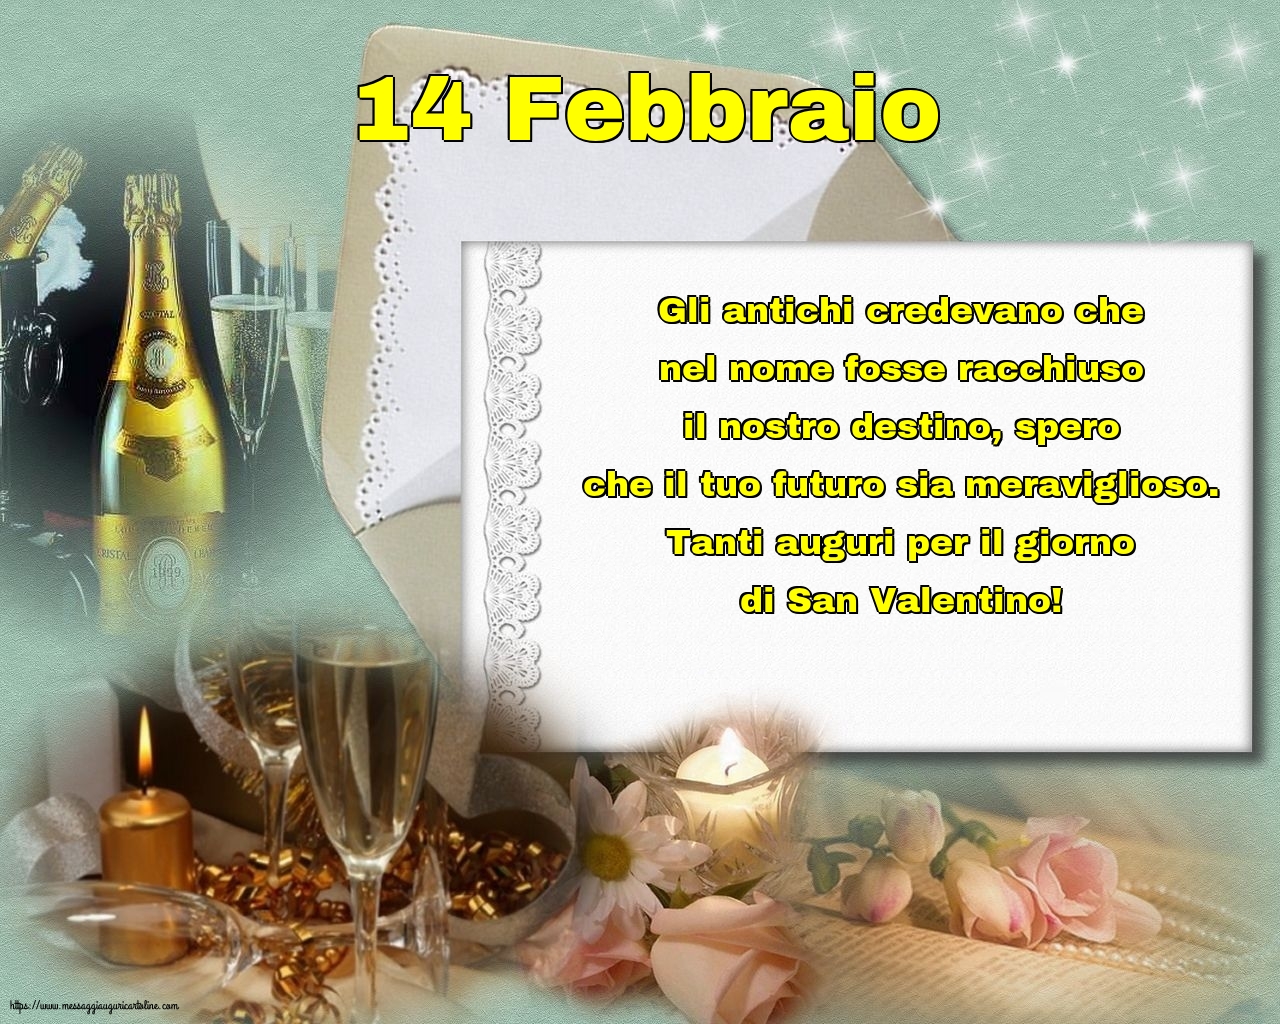 14 Febbraio - 14 Febbraio - Tanti auguri per il giorno di San Valentino!